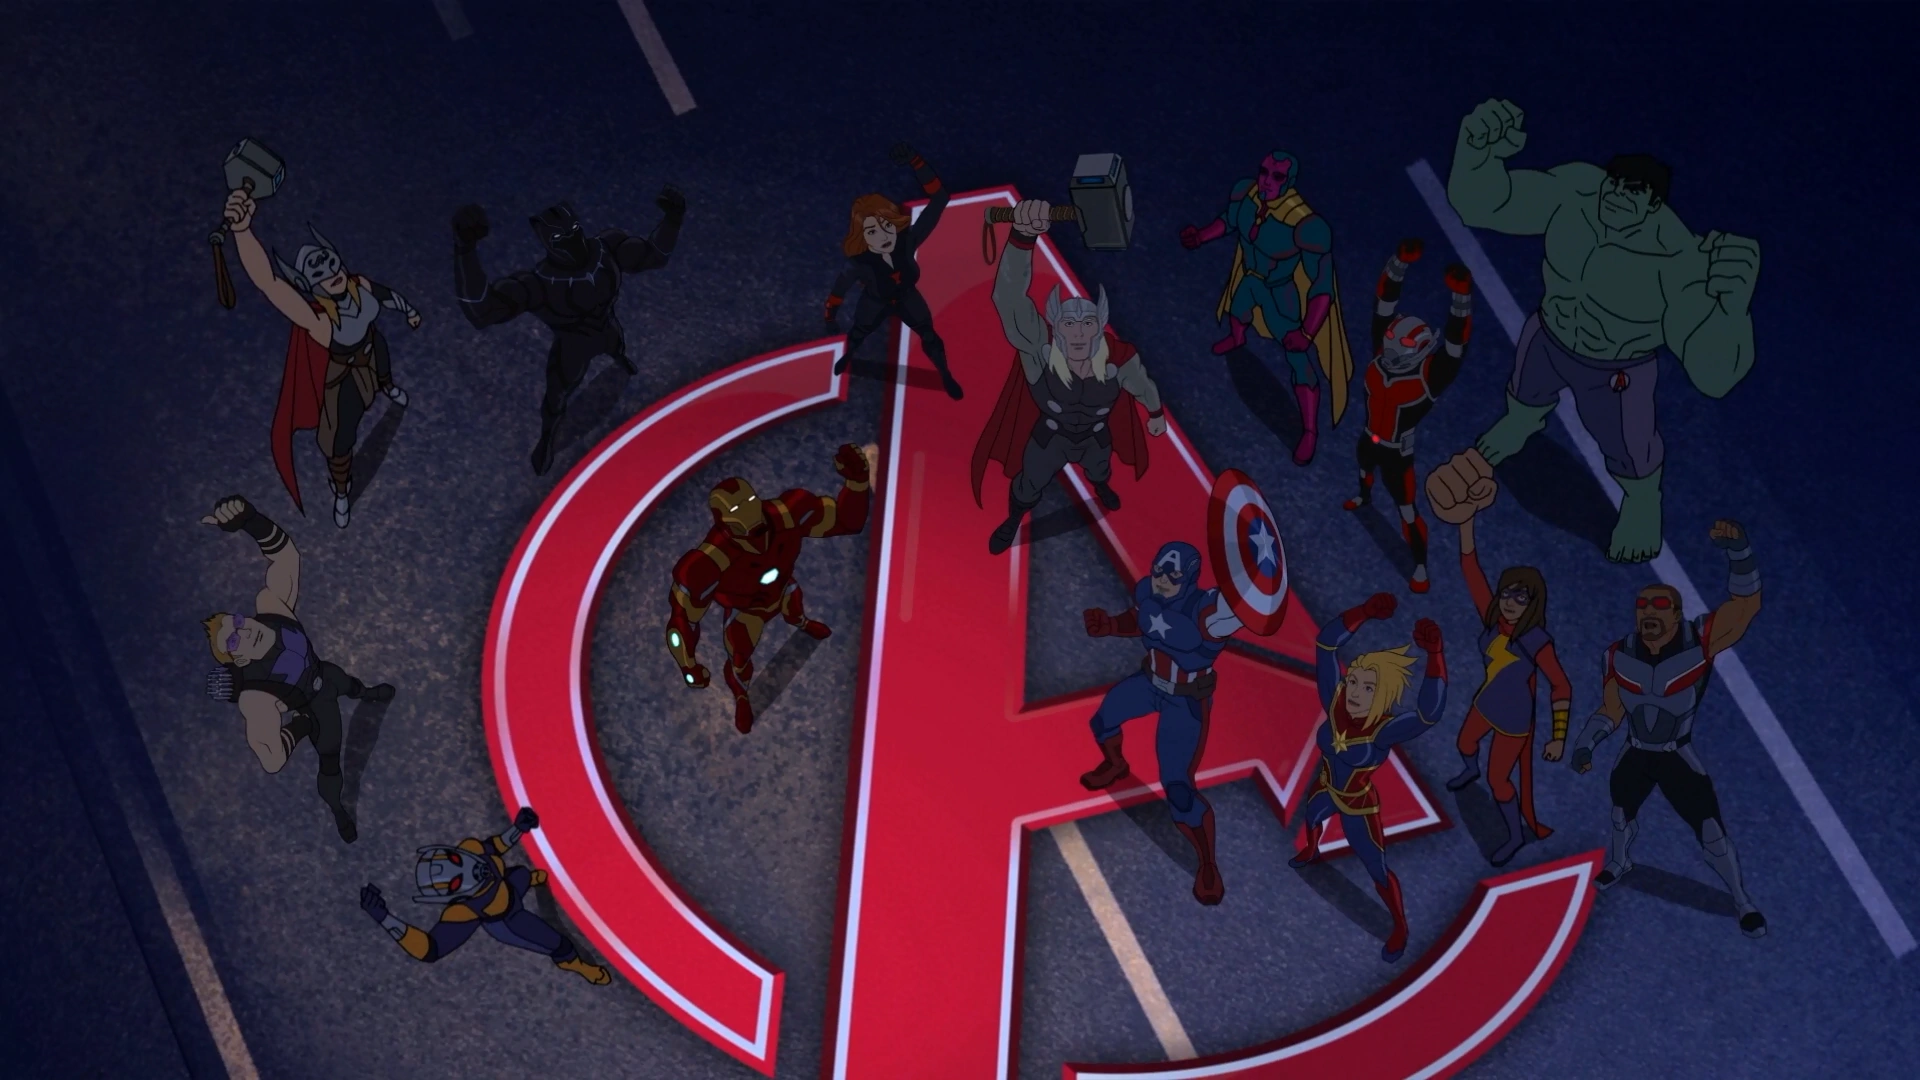 Ant-Man, Marvel's Avengers Assemble Wiki